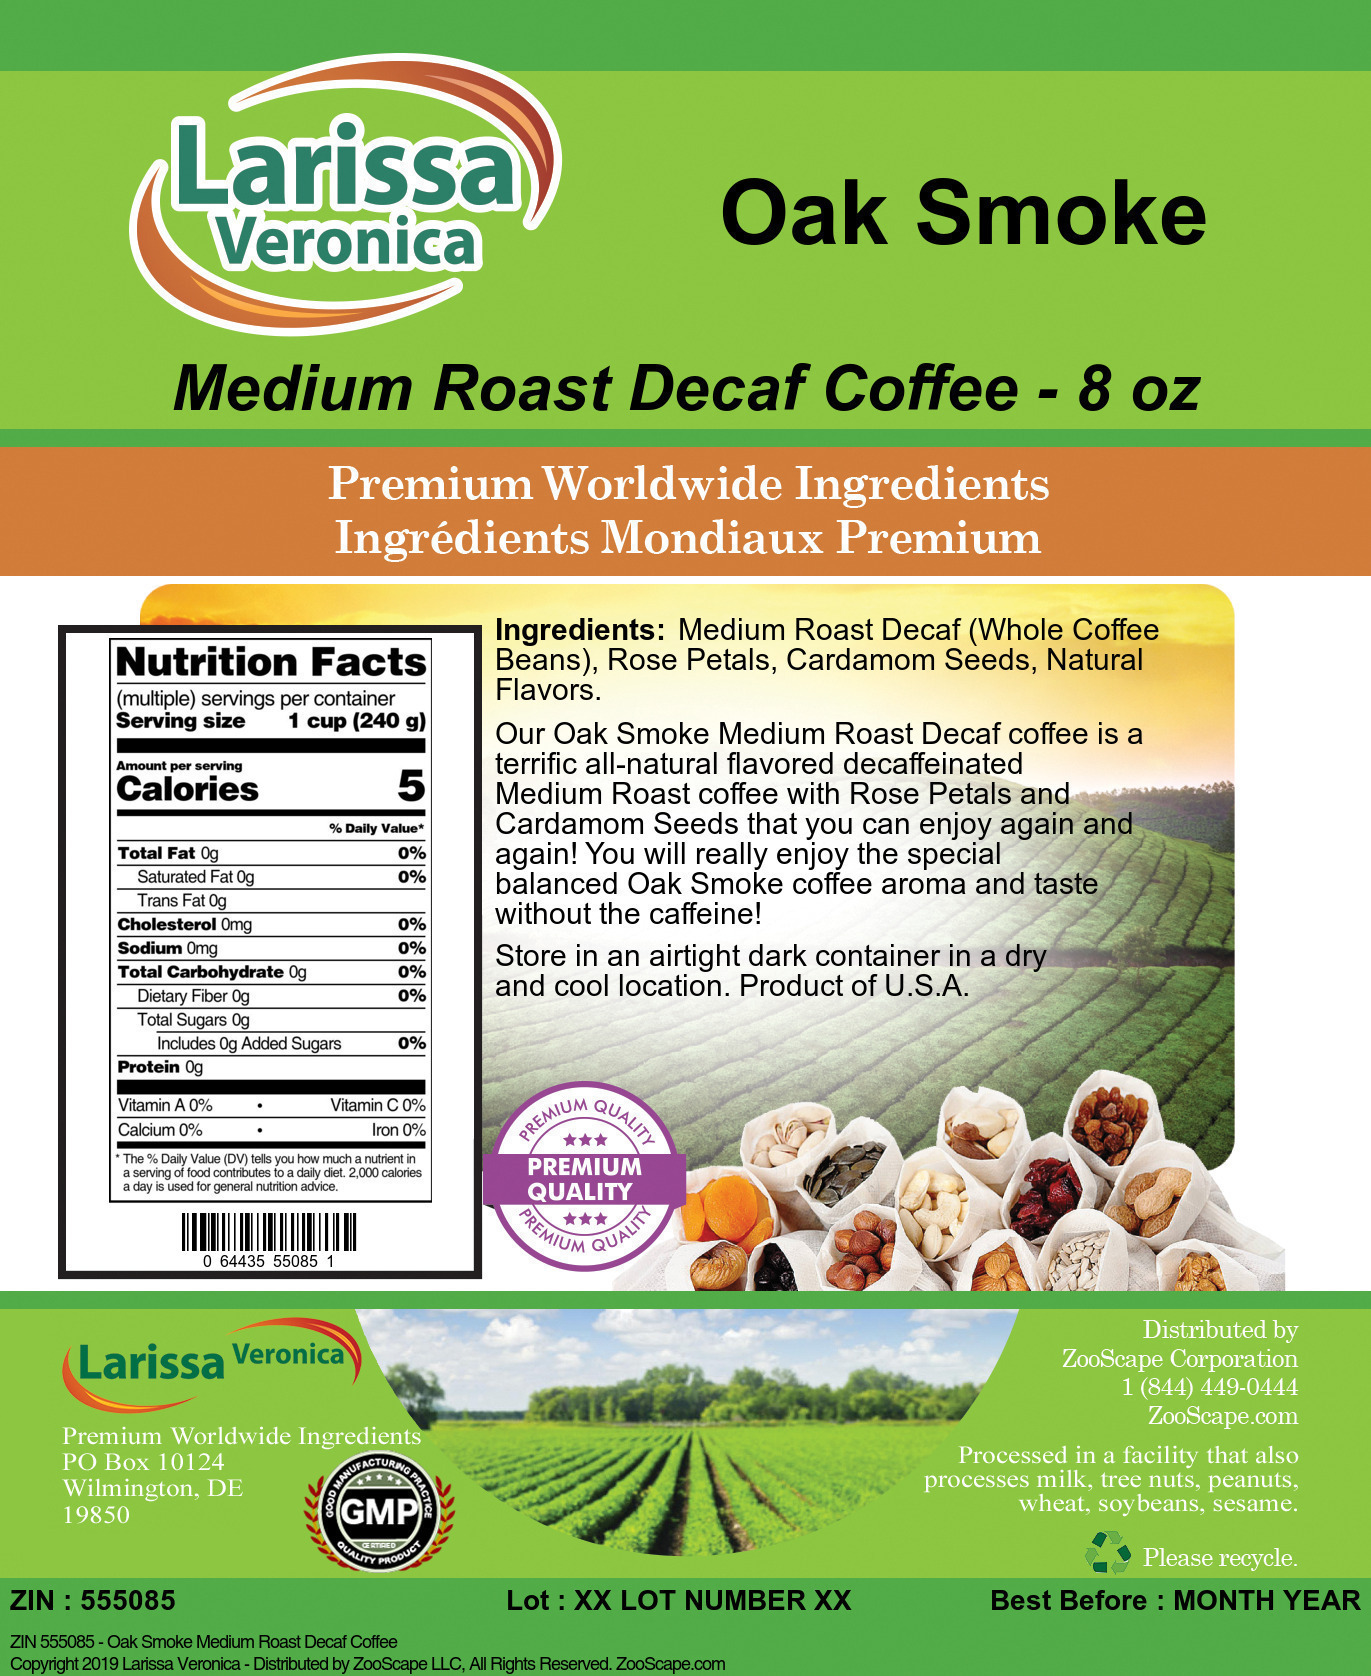 Oak Smoke Medium Roast Decaf Coffee - Label